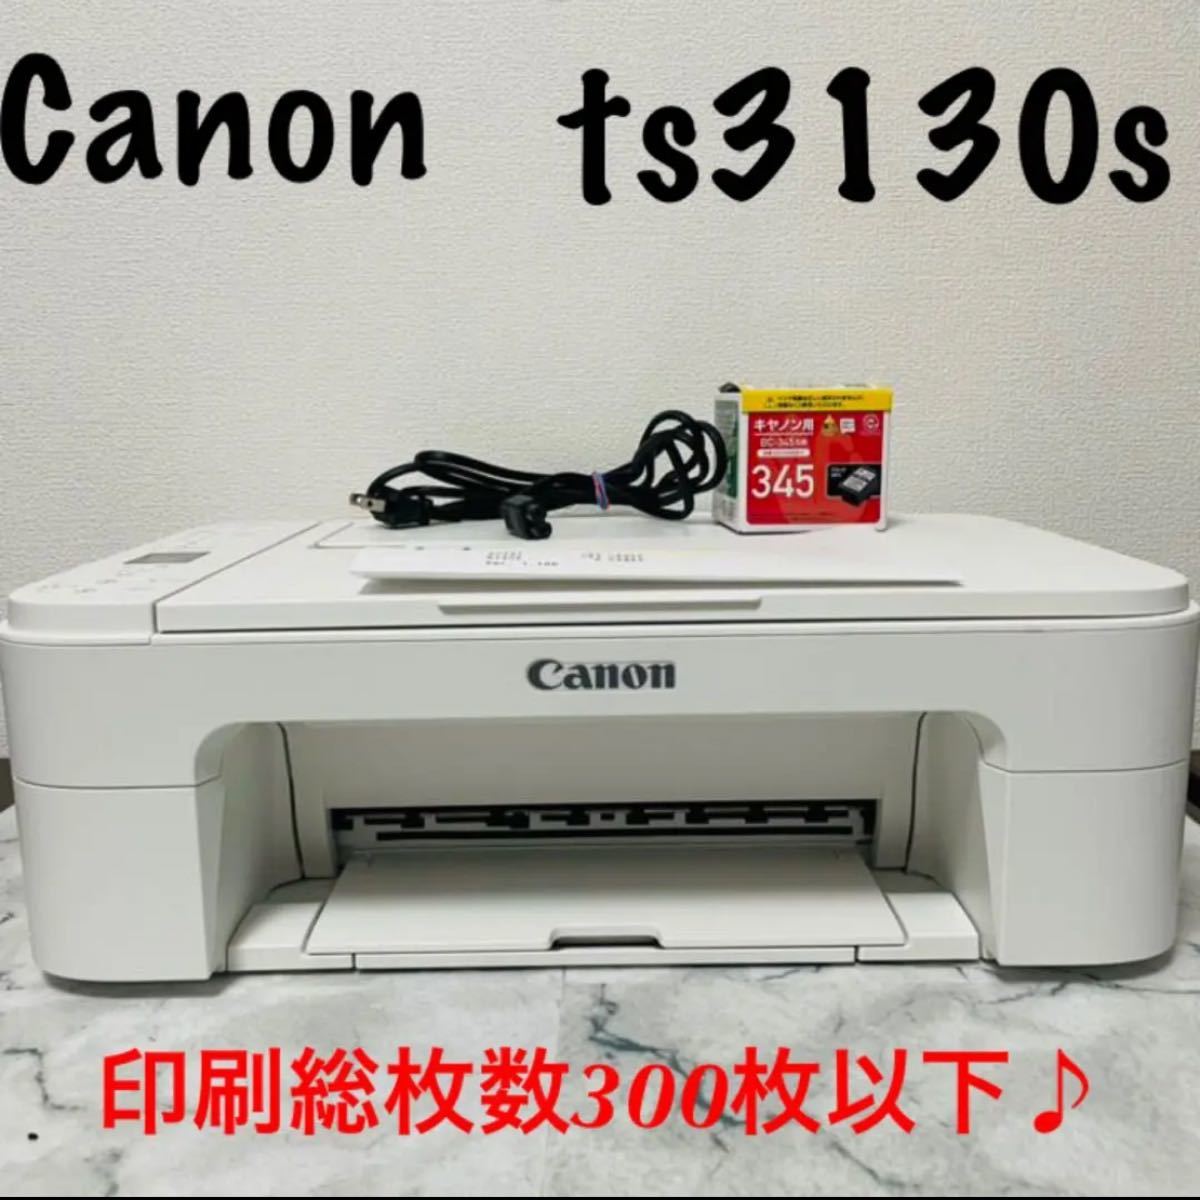 【美品】Canon PIXUS TS3130SWH 新品黒インク付き インクジェットプリンター キャノンプリンター